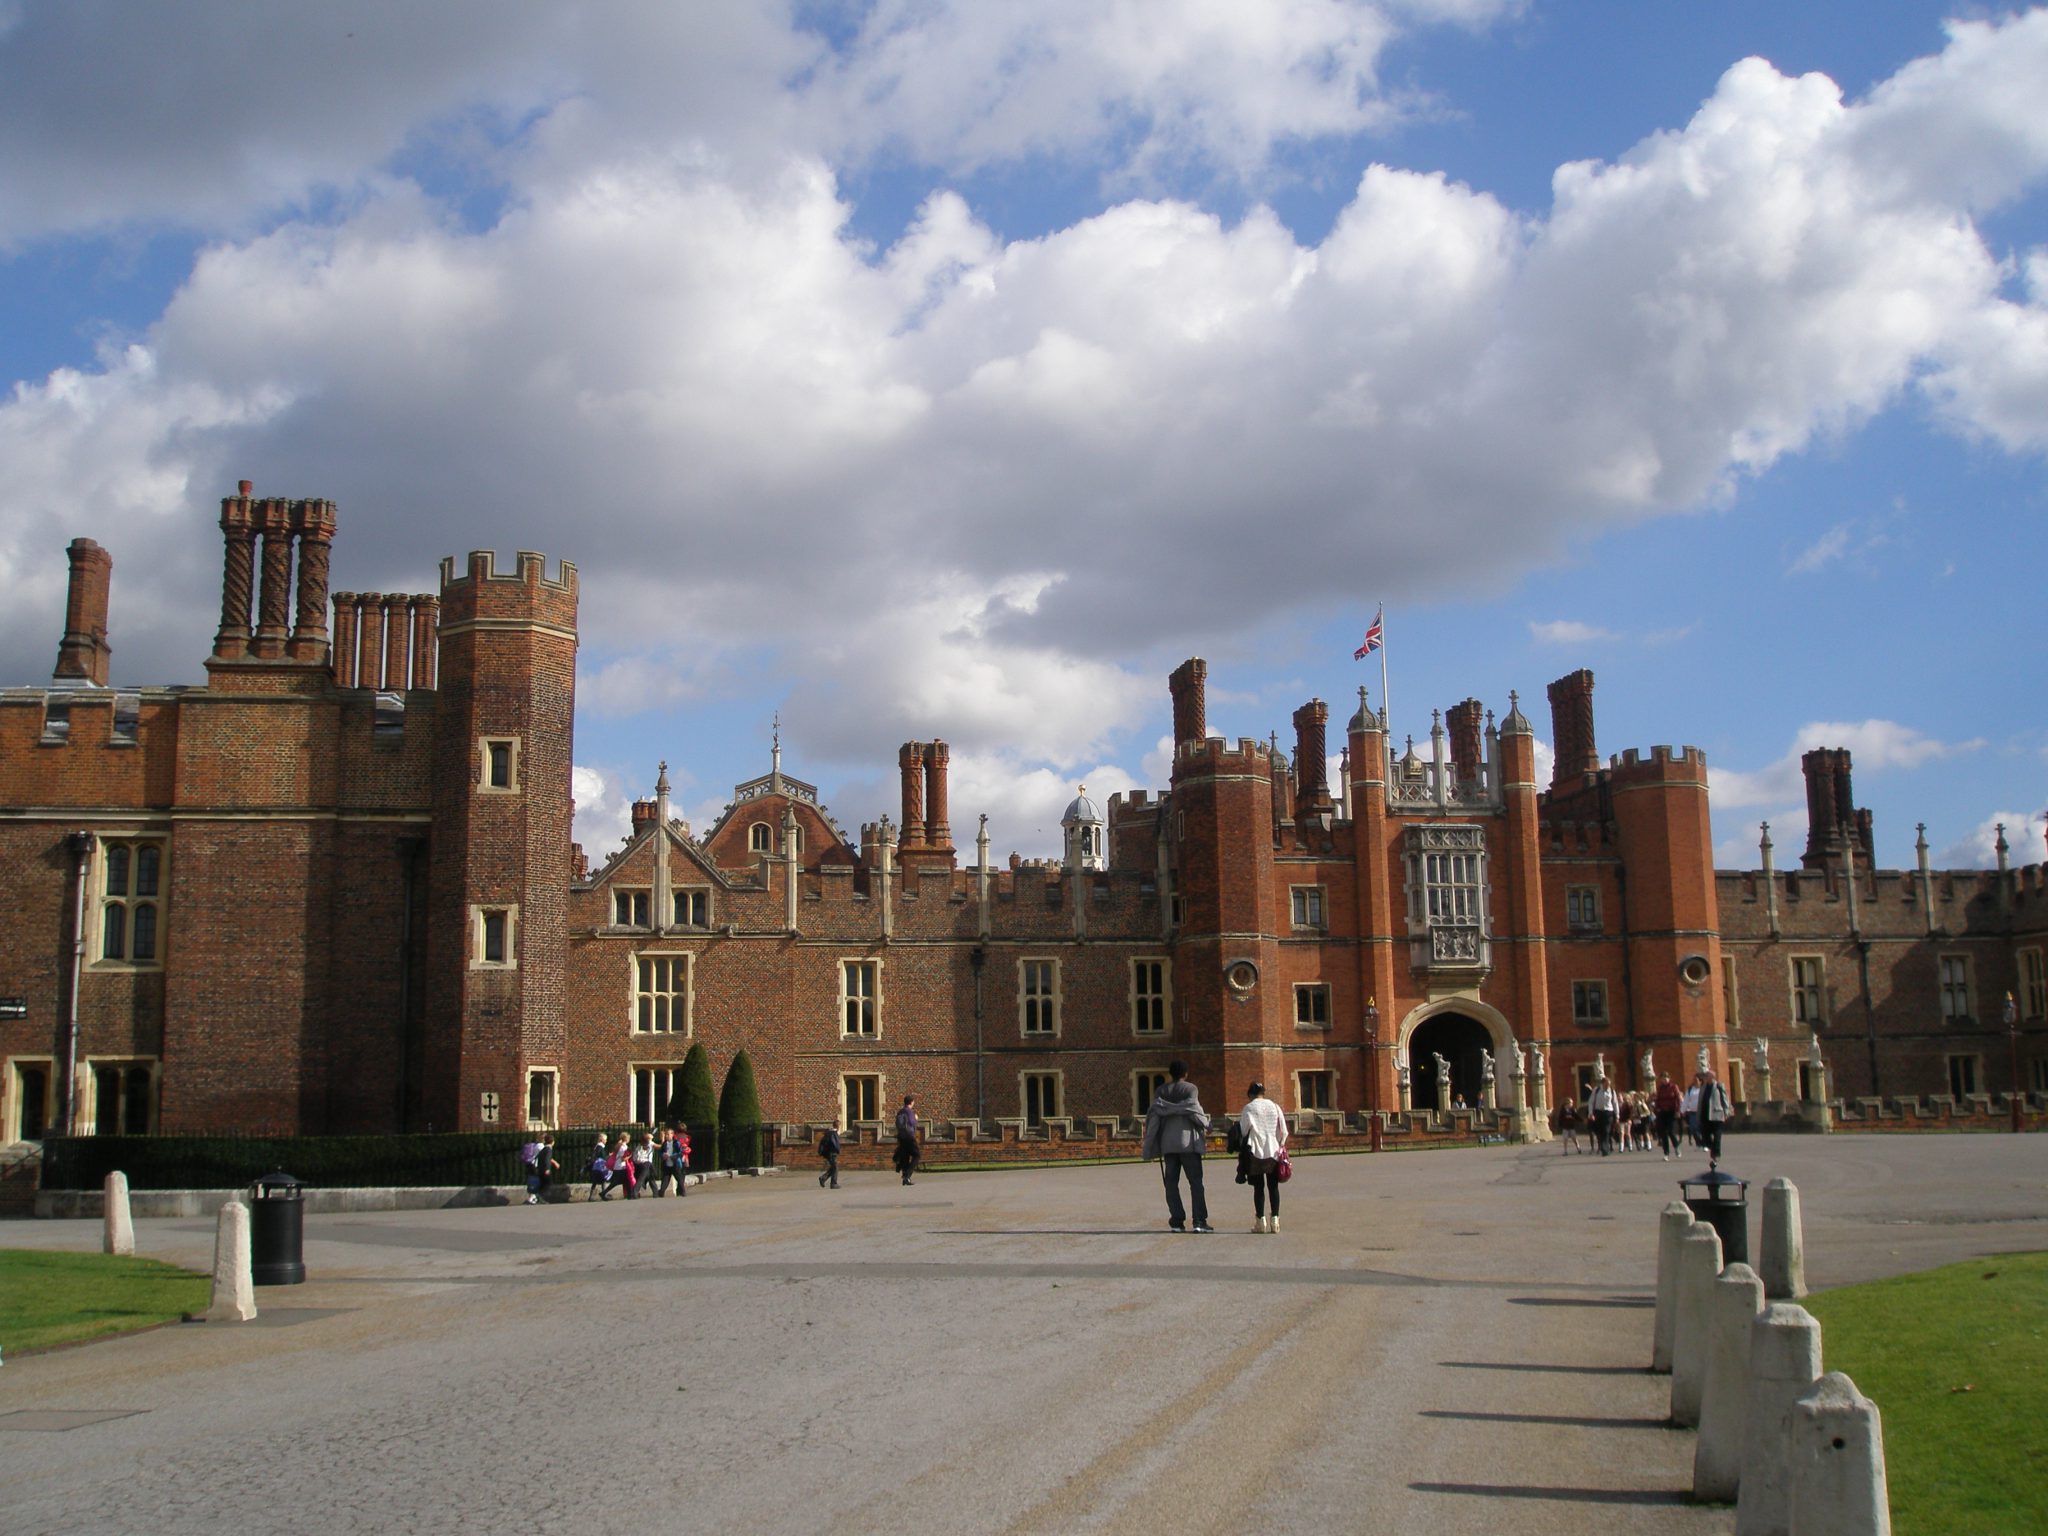 Approaching Hampton Court Palace